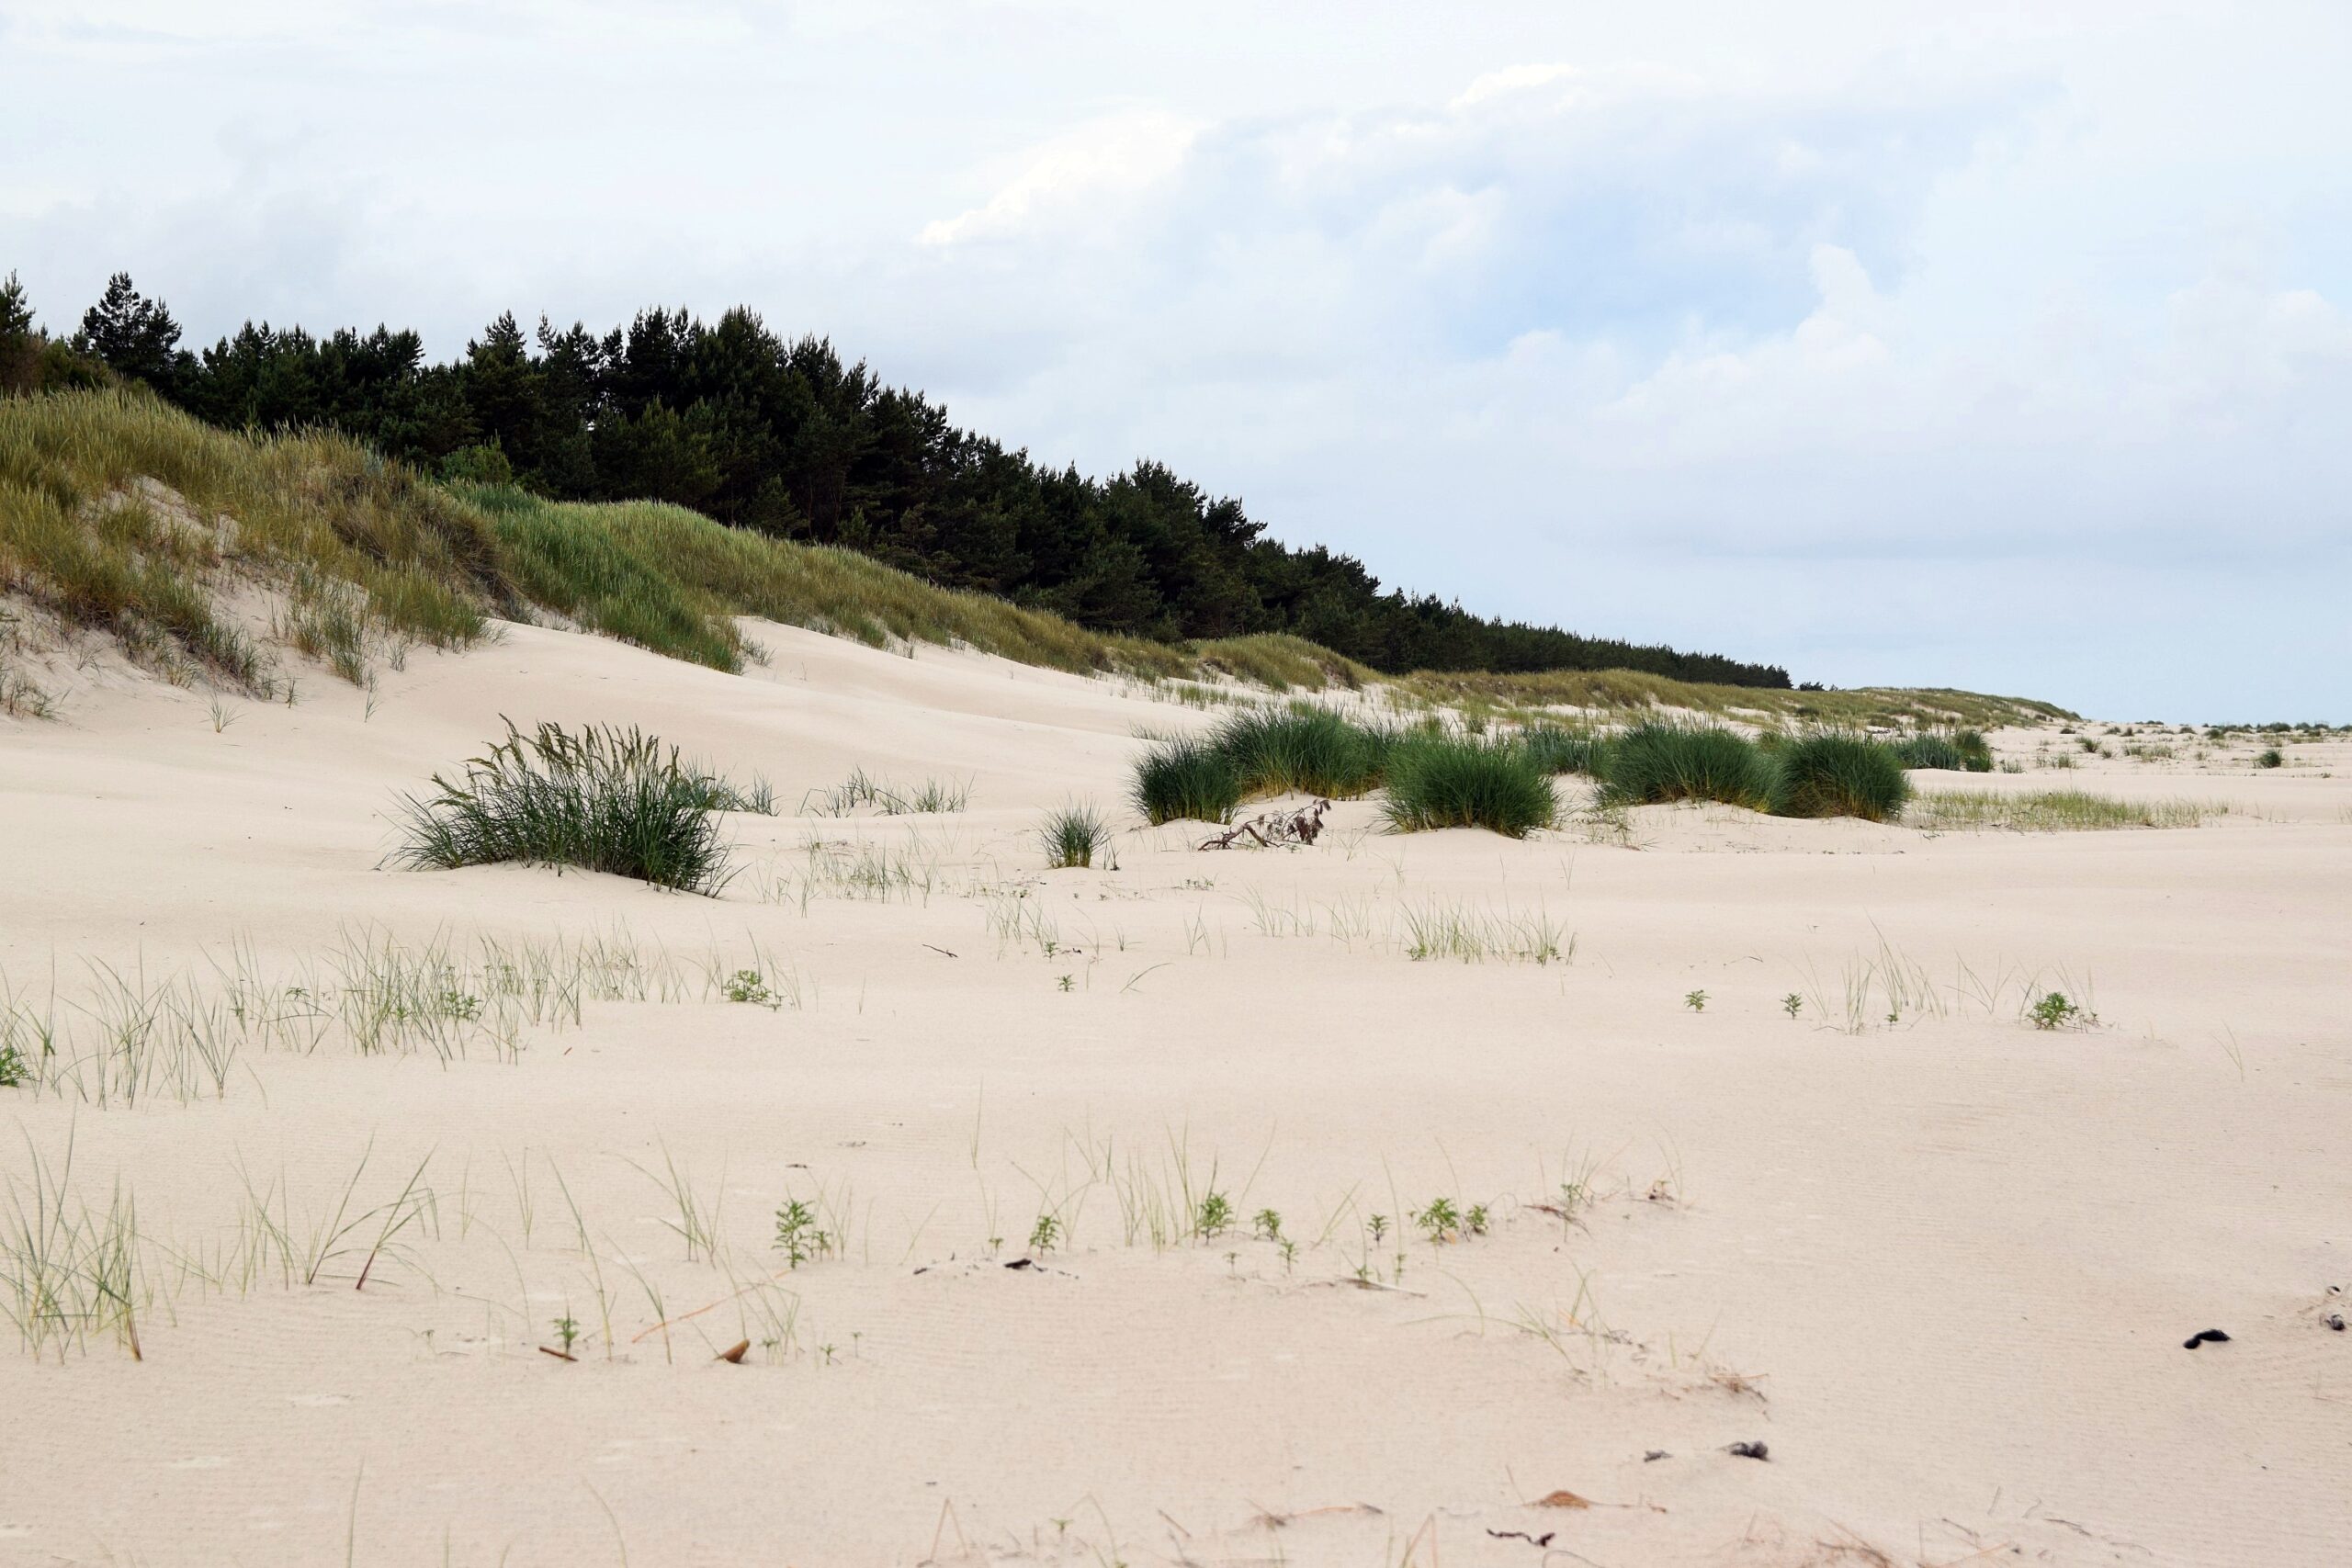 Zdjęcie plaży, na której w naturalny sposób tworzą się nowe wydmy za sprawą roślinności plażowo wydmowej